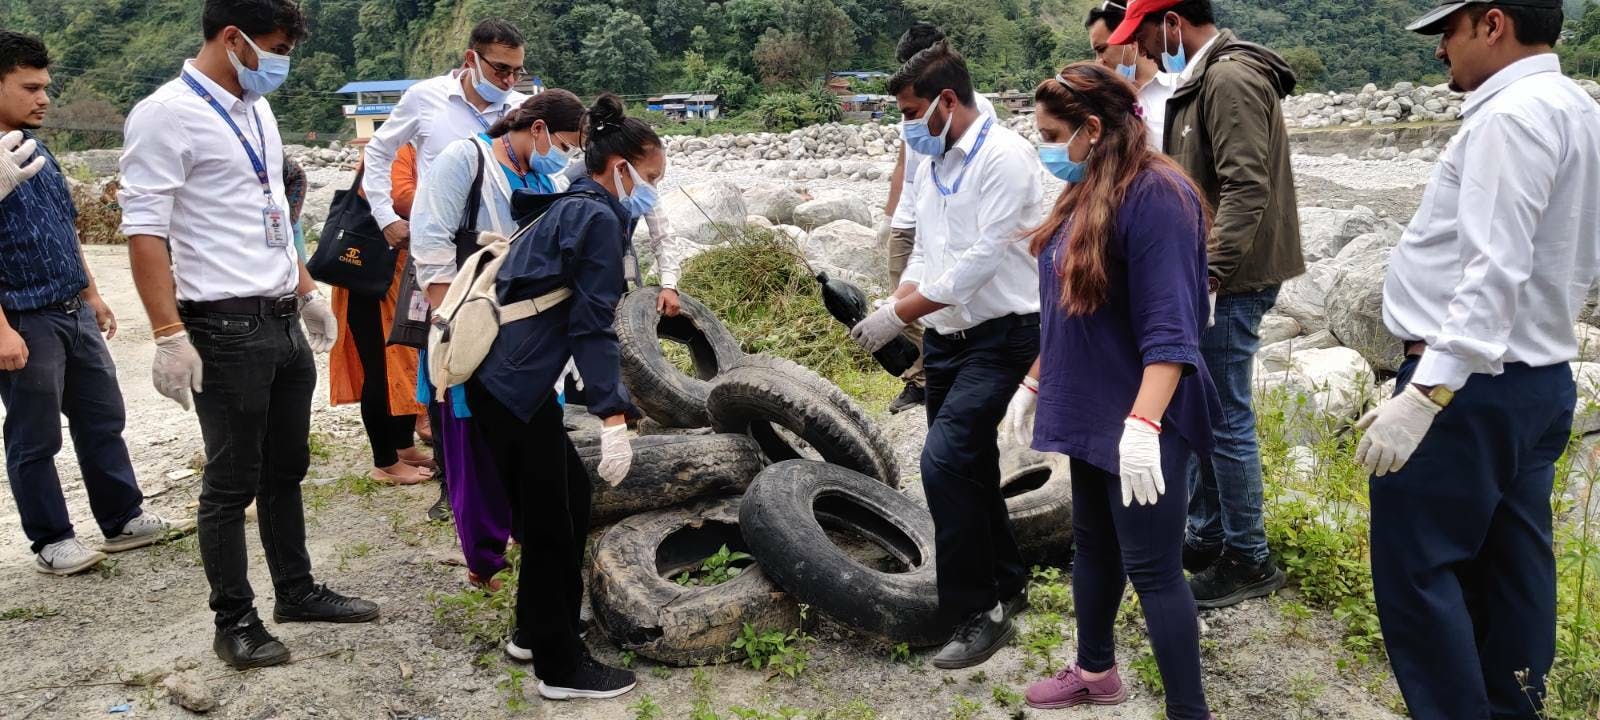 Différents acteurs portant des masques et des gants fouillent une pile de pneus de voiture à la recherche de larves. Ceux-ci sont empilés juste devant une rivière.